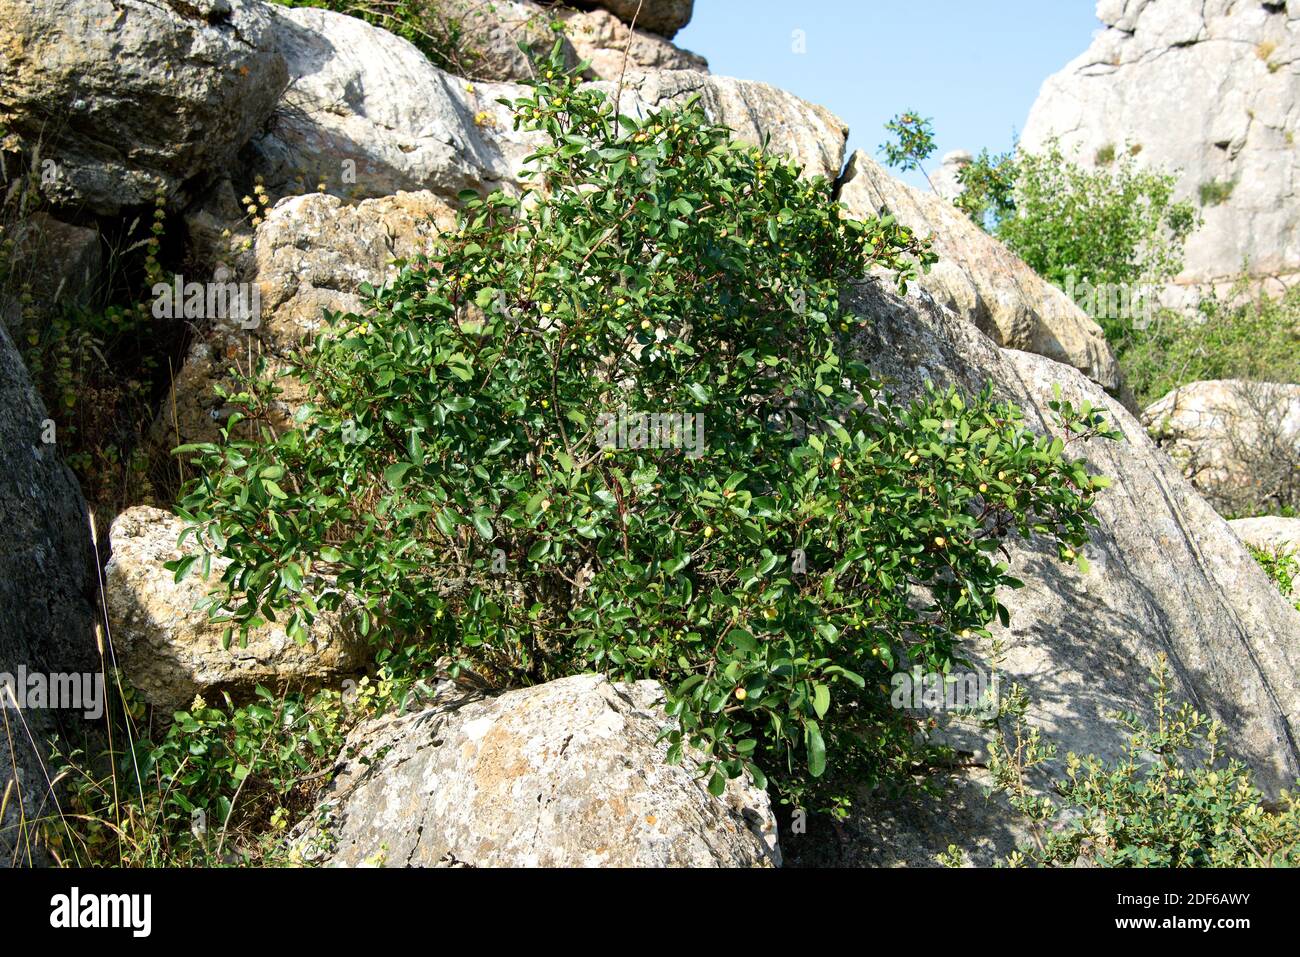 Terebinth oder Terpentinbaum (Pistacia terebinthus) ist ein kleiner Laubbaum, der im Mittelmeerraum und auf den Kanarischen Inseln beheimatet ist. Angiospermen. Stockfoto